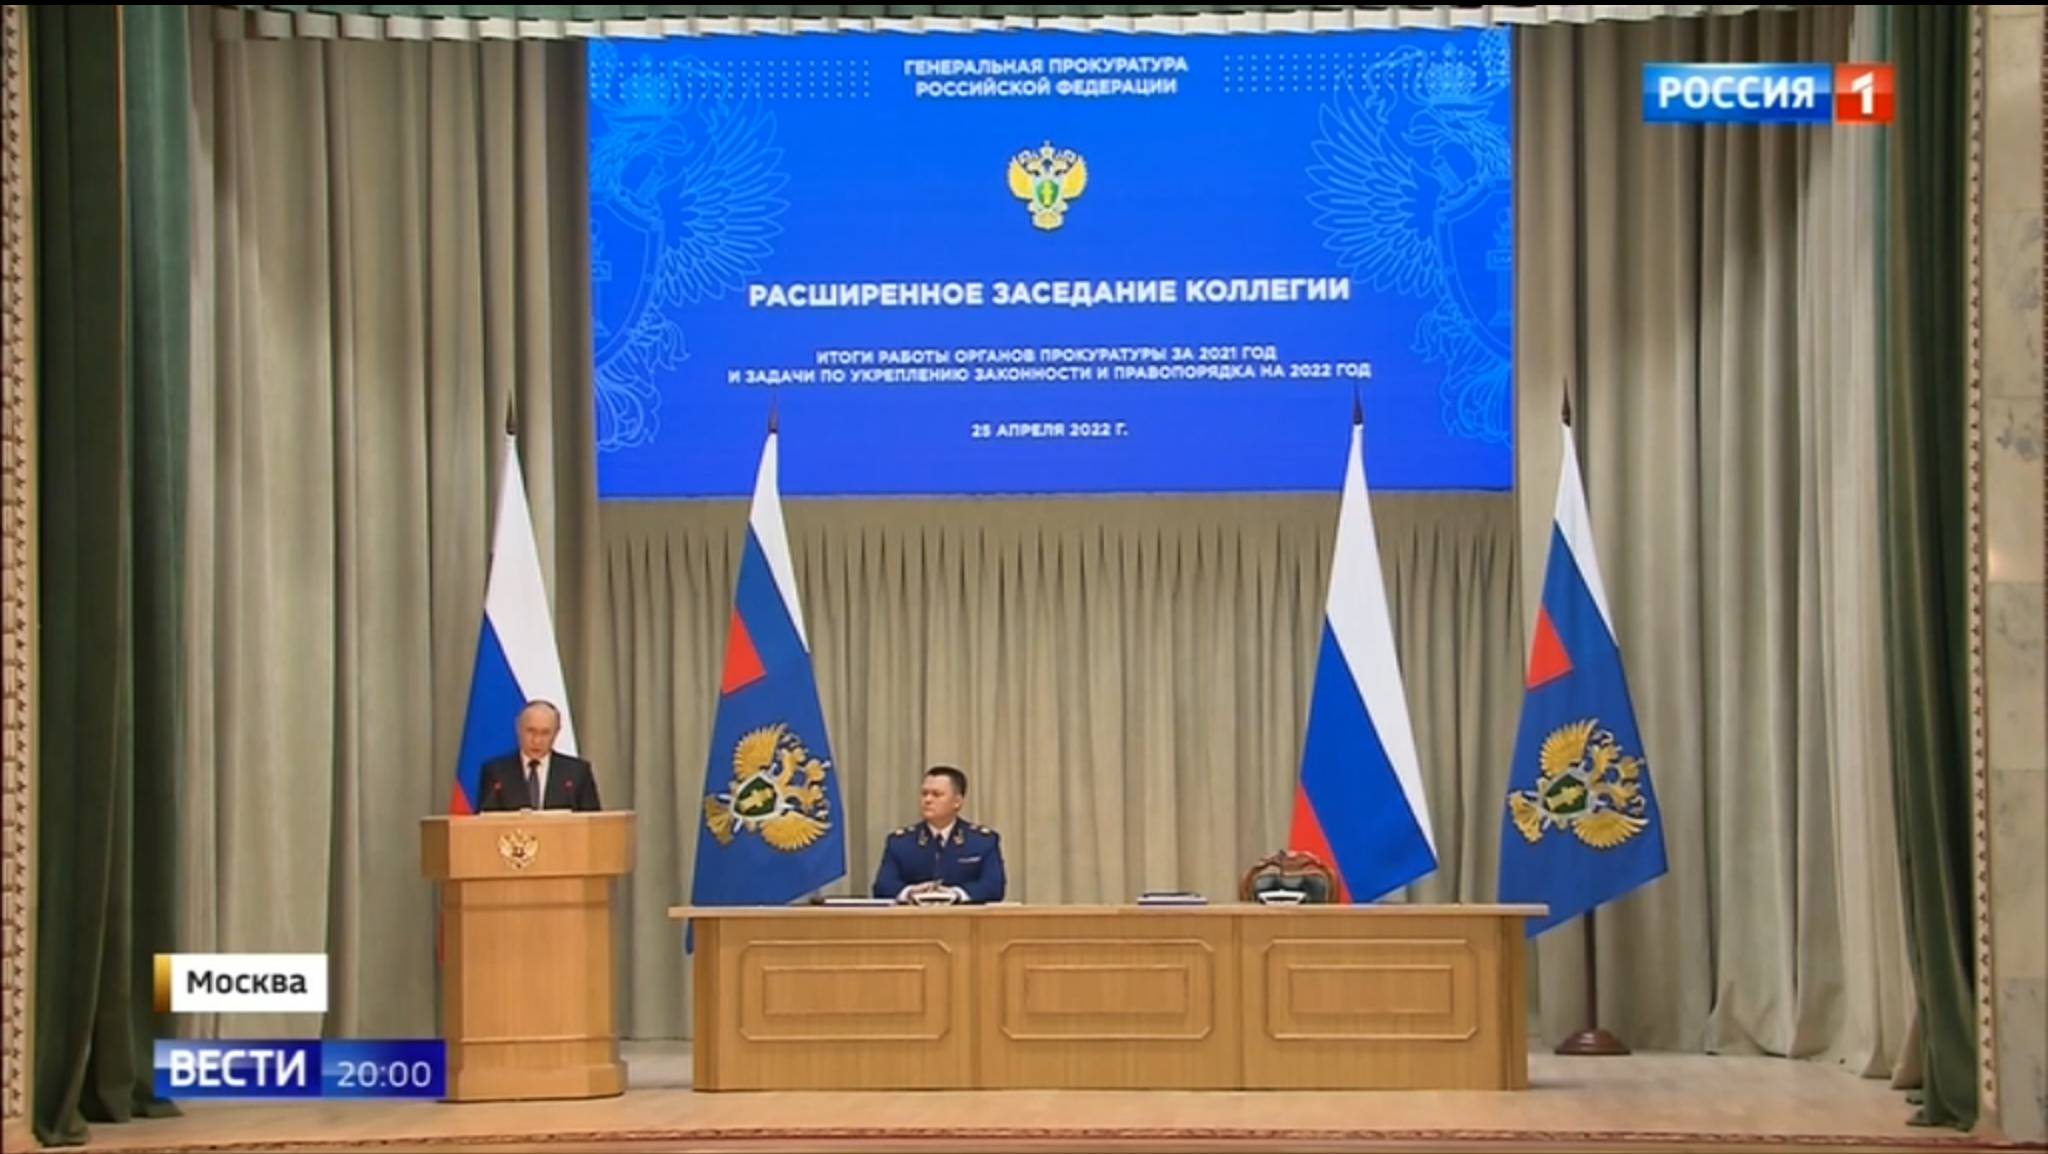 Męzczyzna na mównicy (Putin), pozostali - w prezydium, z tyłu rosyjskie flagi